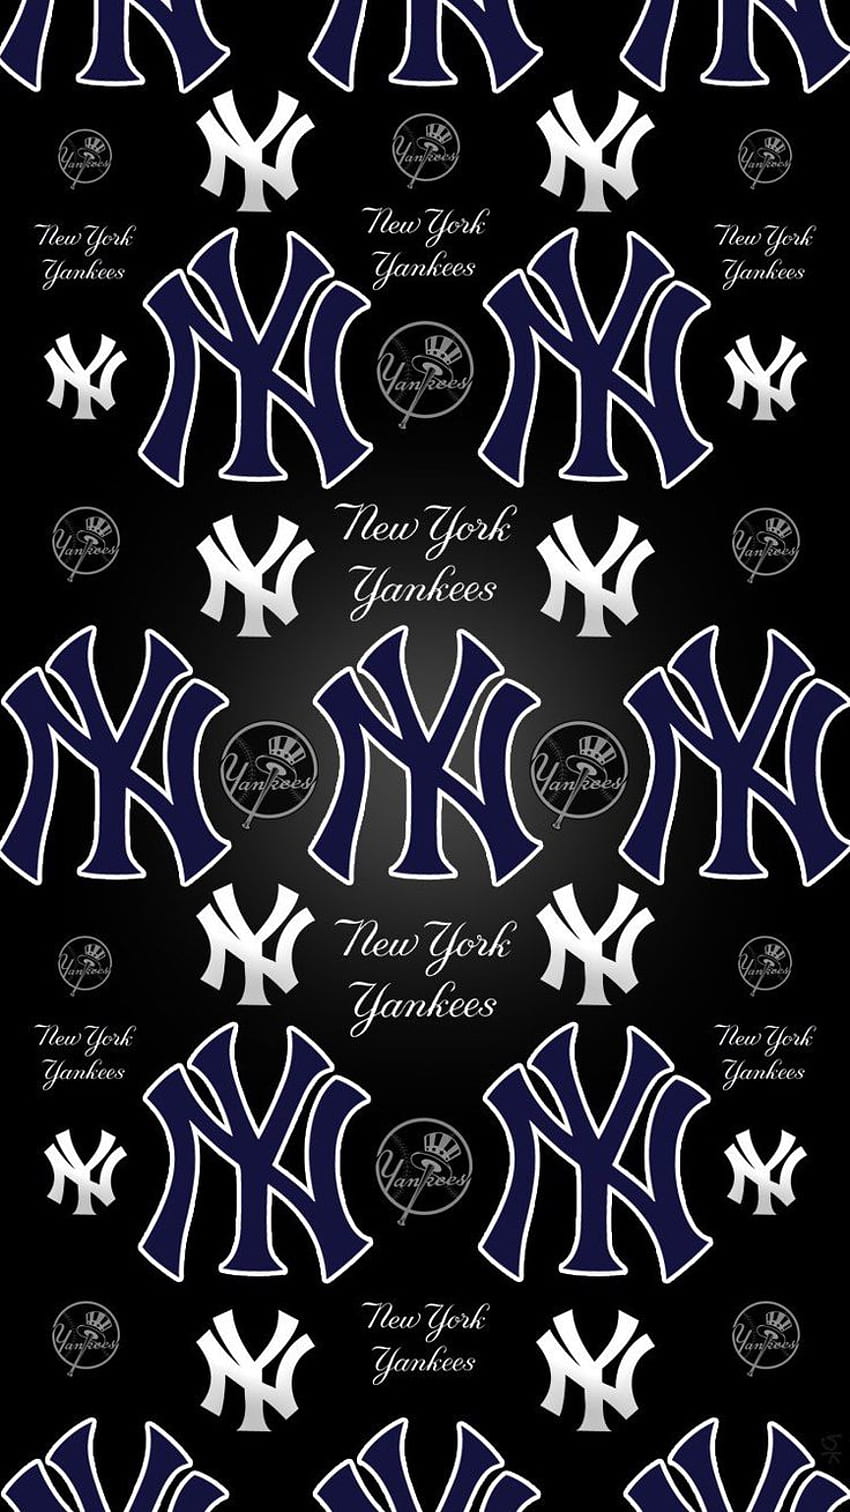 Yankees Wallpaper - iXpap  New york yankees logo, Yankees wallpaper, Mlb  wallpaper